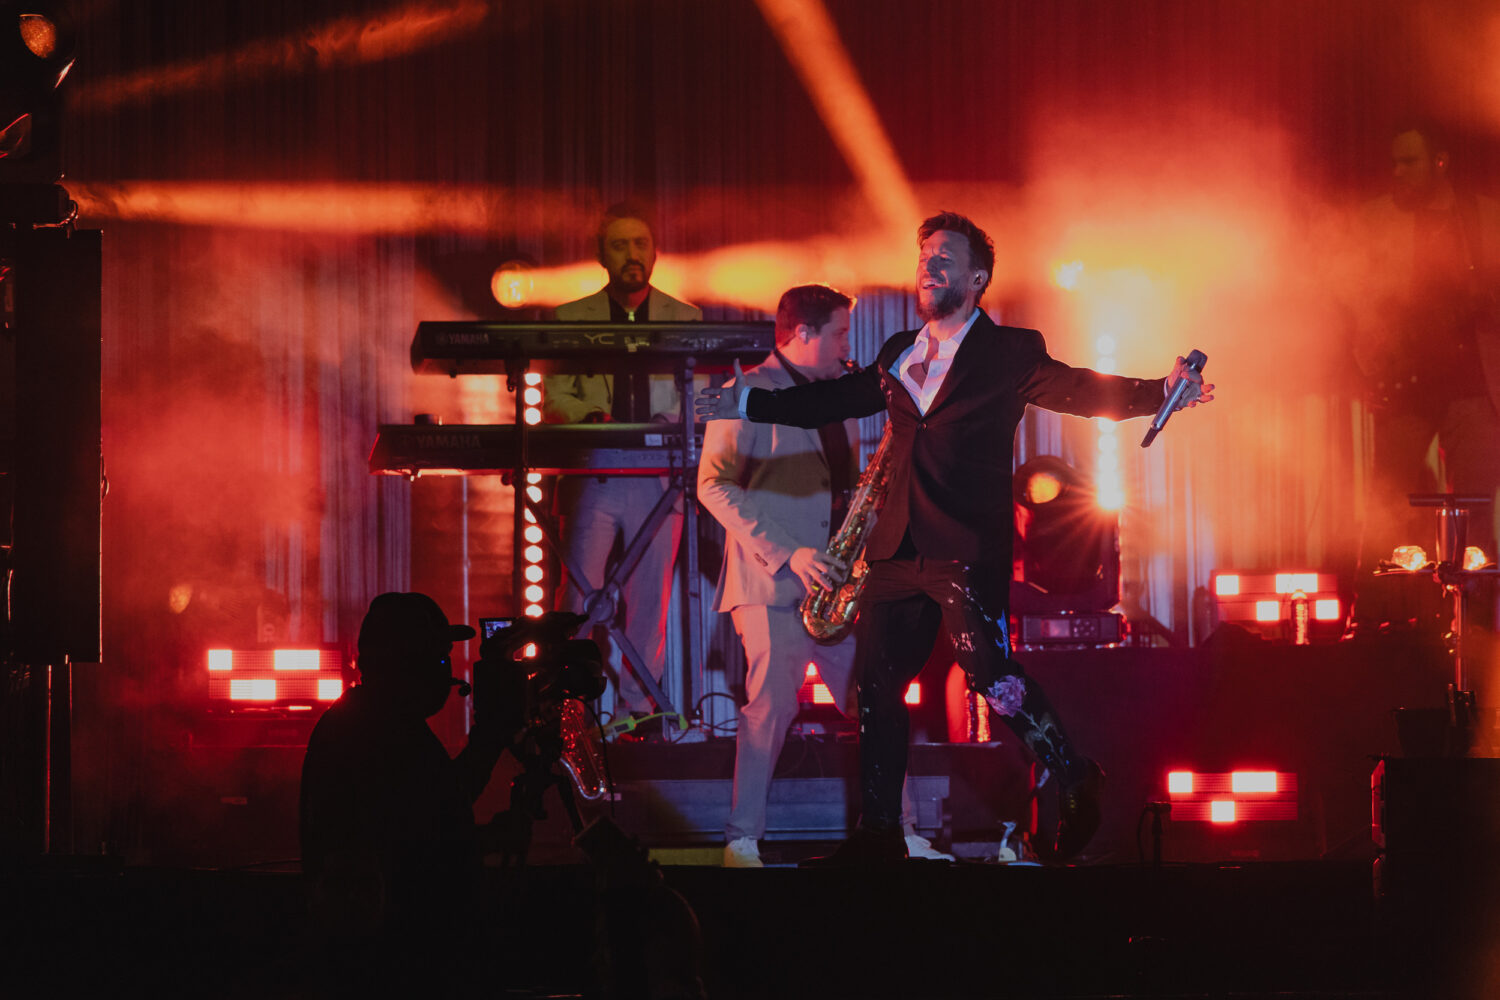 Noel de Sin Bandera durante concierto en Hermosillo. Tiene los brazos abiertos con el micrófono en la mano izquierda.